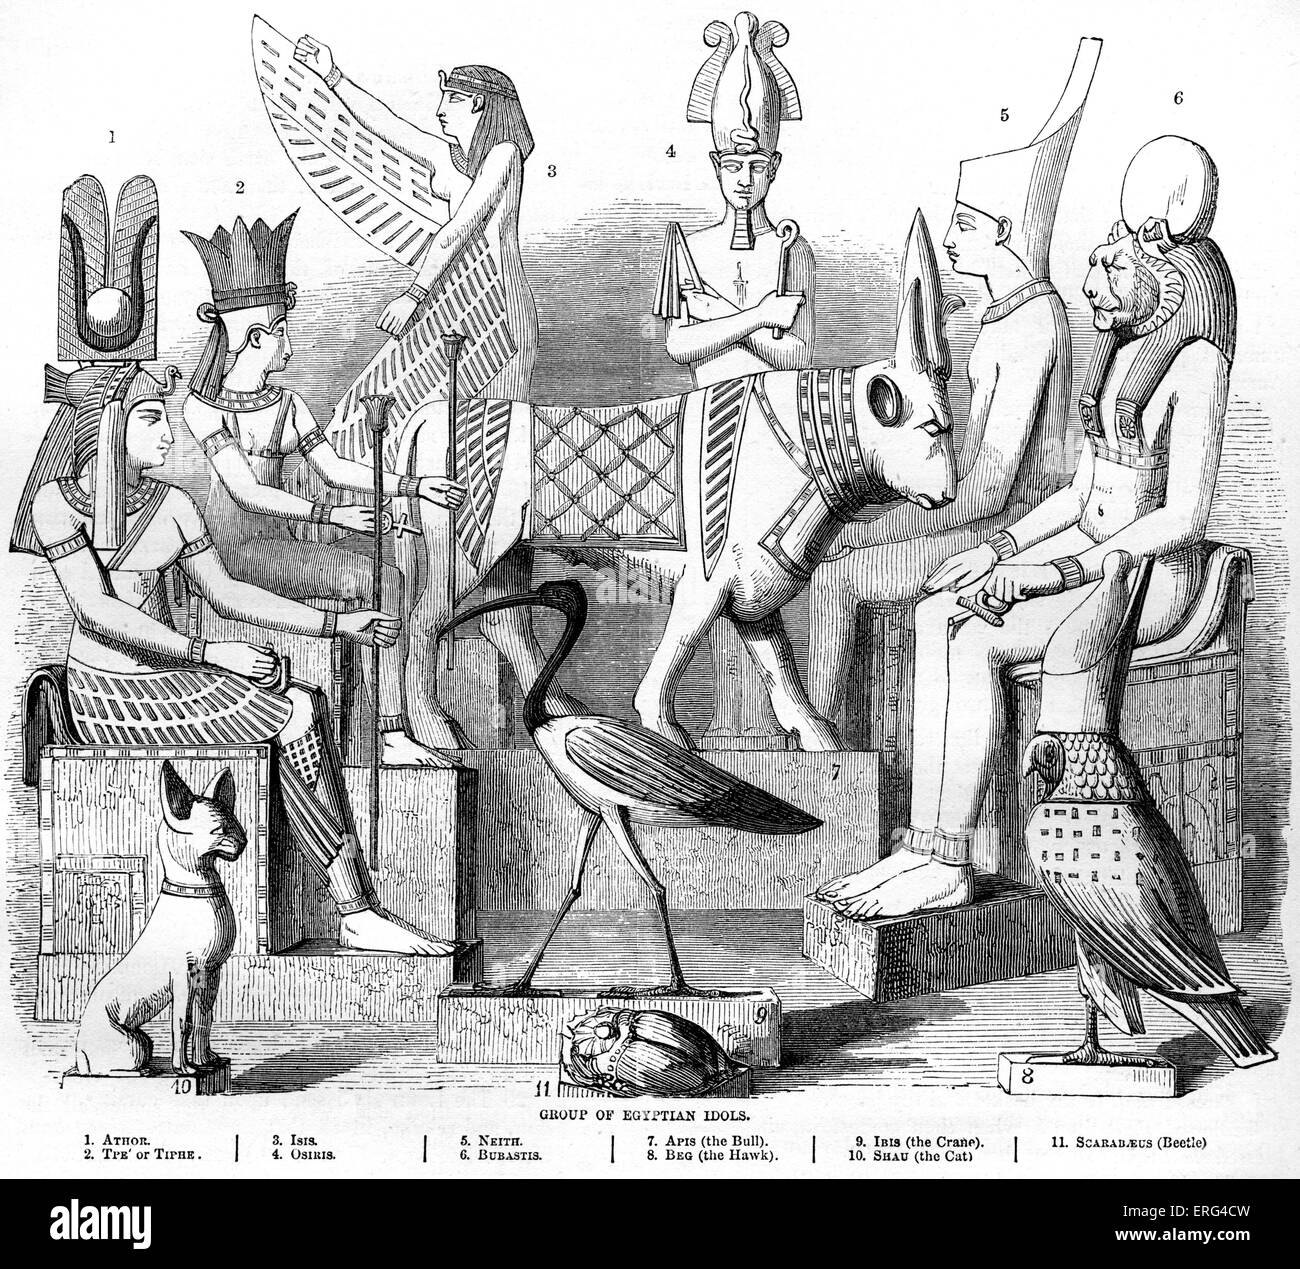 Group of Egyptian idols ( Athor, Tiphe, Isis, Osiris, Neith, Bubastis, Apis - the bull, Beg - the hawk, Ibis - the crane, Shay - the cat, Scarabeus - the beetle) Deuteronomy, chapter XXVII. Stock Photo